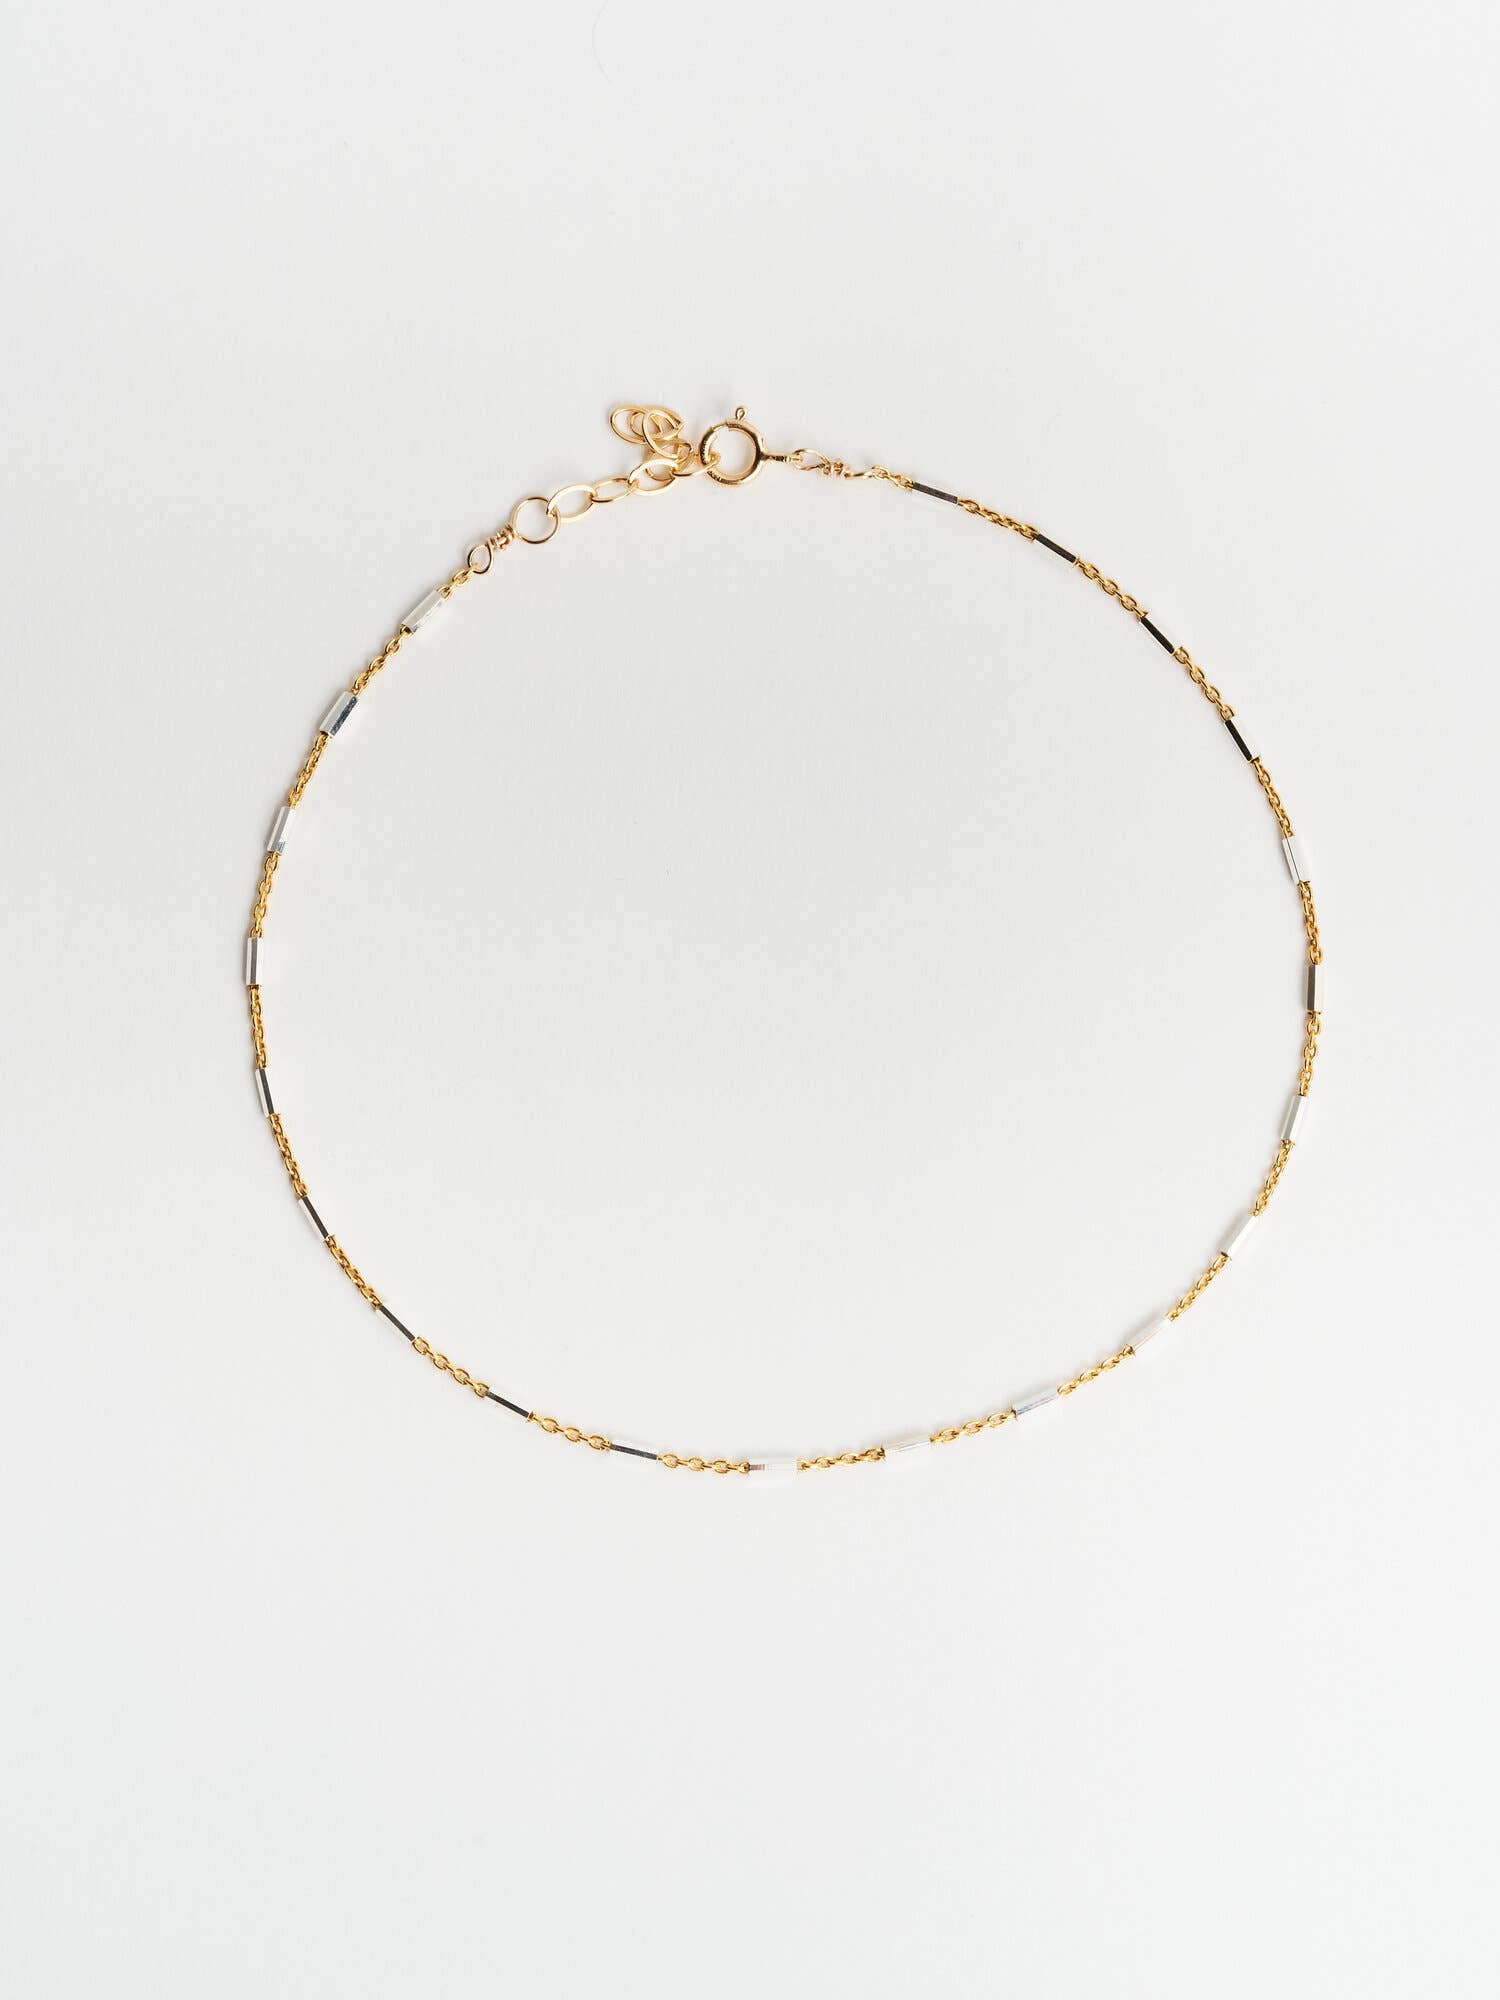 Frauen Persönlichkeit Atemberaubende Golden Bar Kreis Lariat Halskette Schmuck